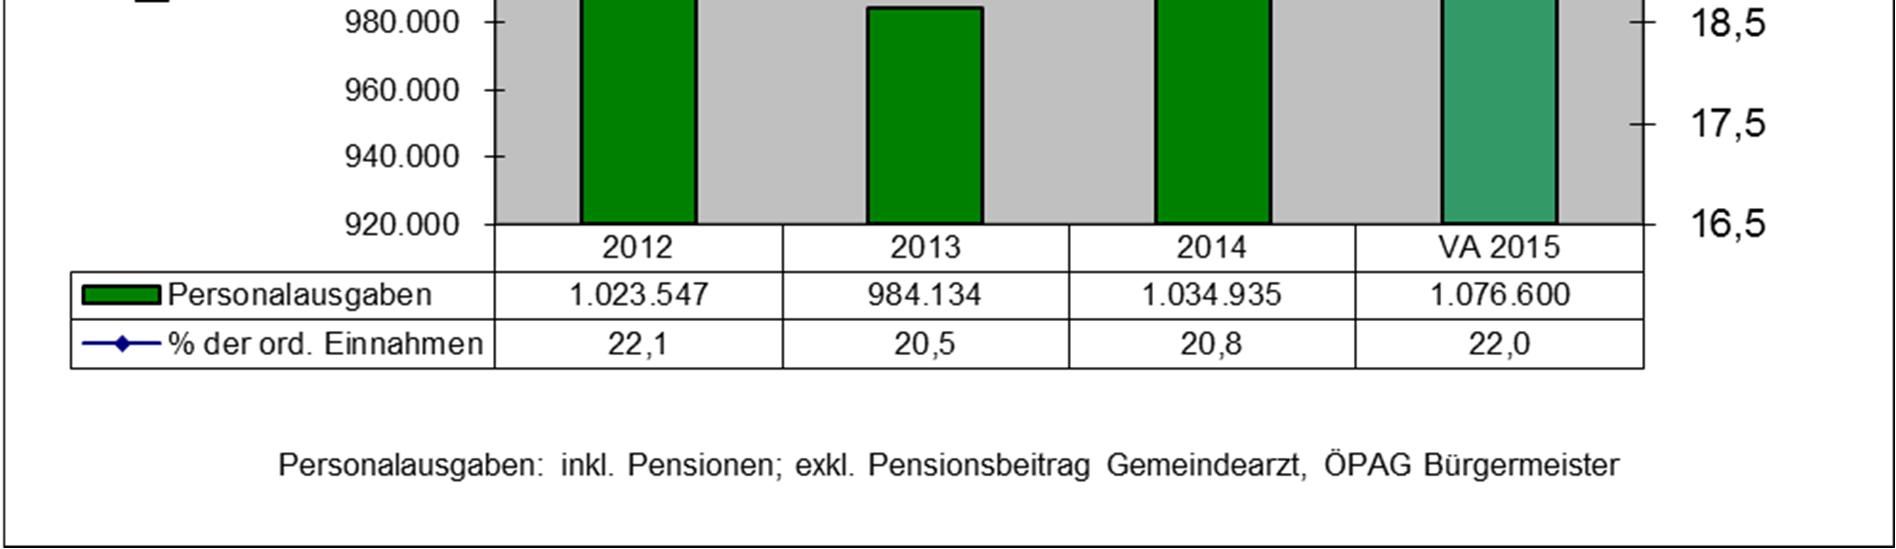 Personal Die Personalausgaben betrugen im Jahr 2012 rd. 1.023.500 Euro und verringerten sich im Jahr 2013 auf 984.100 Euro.